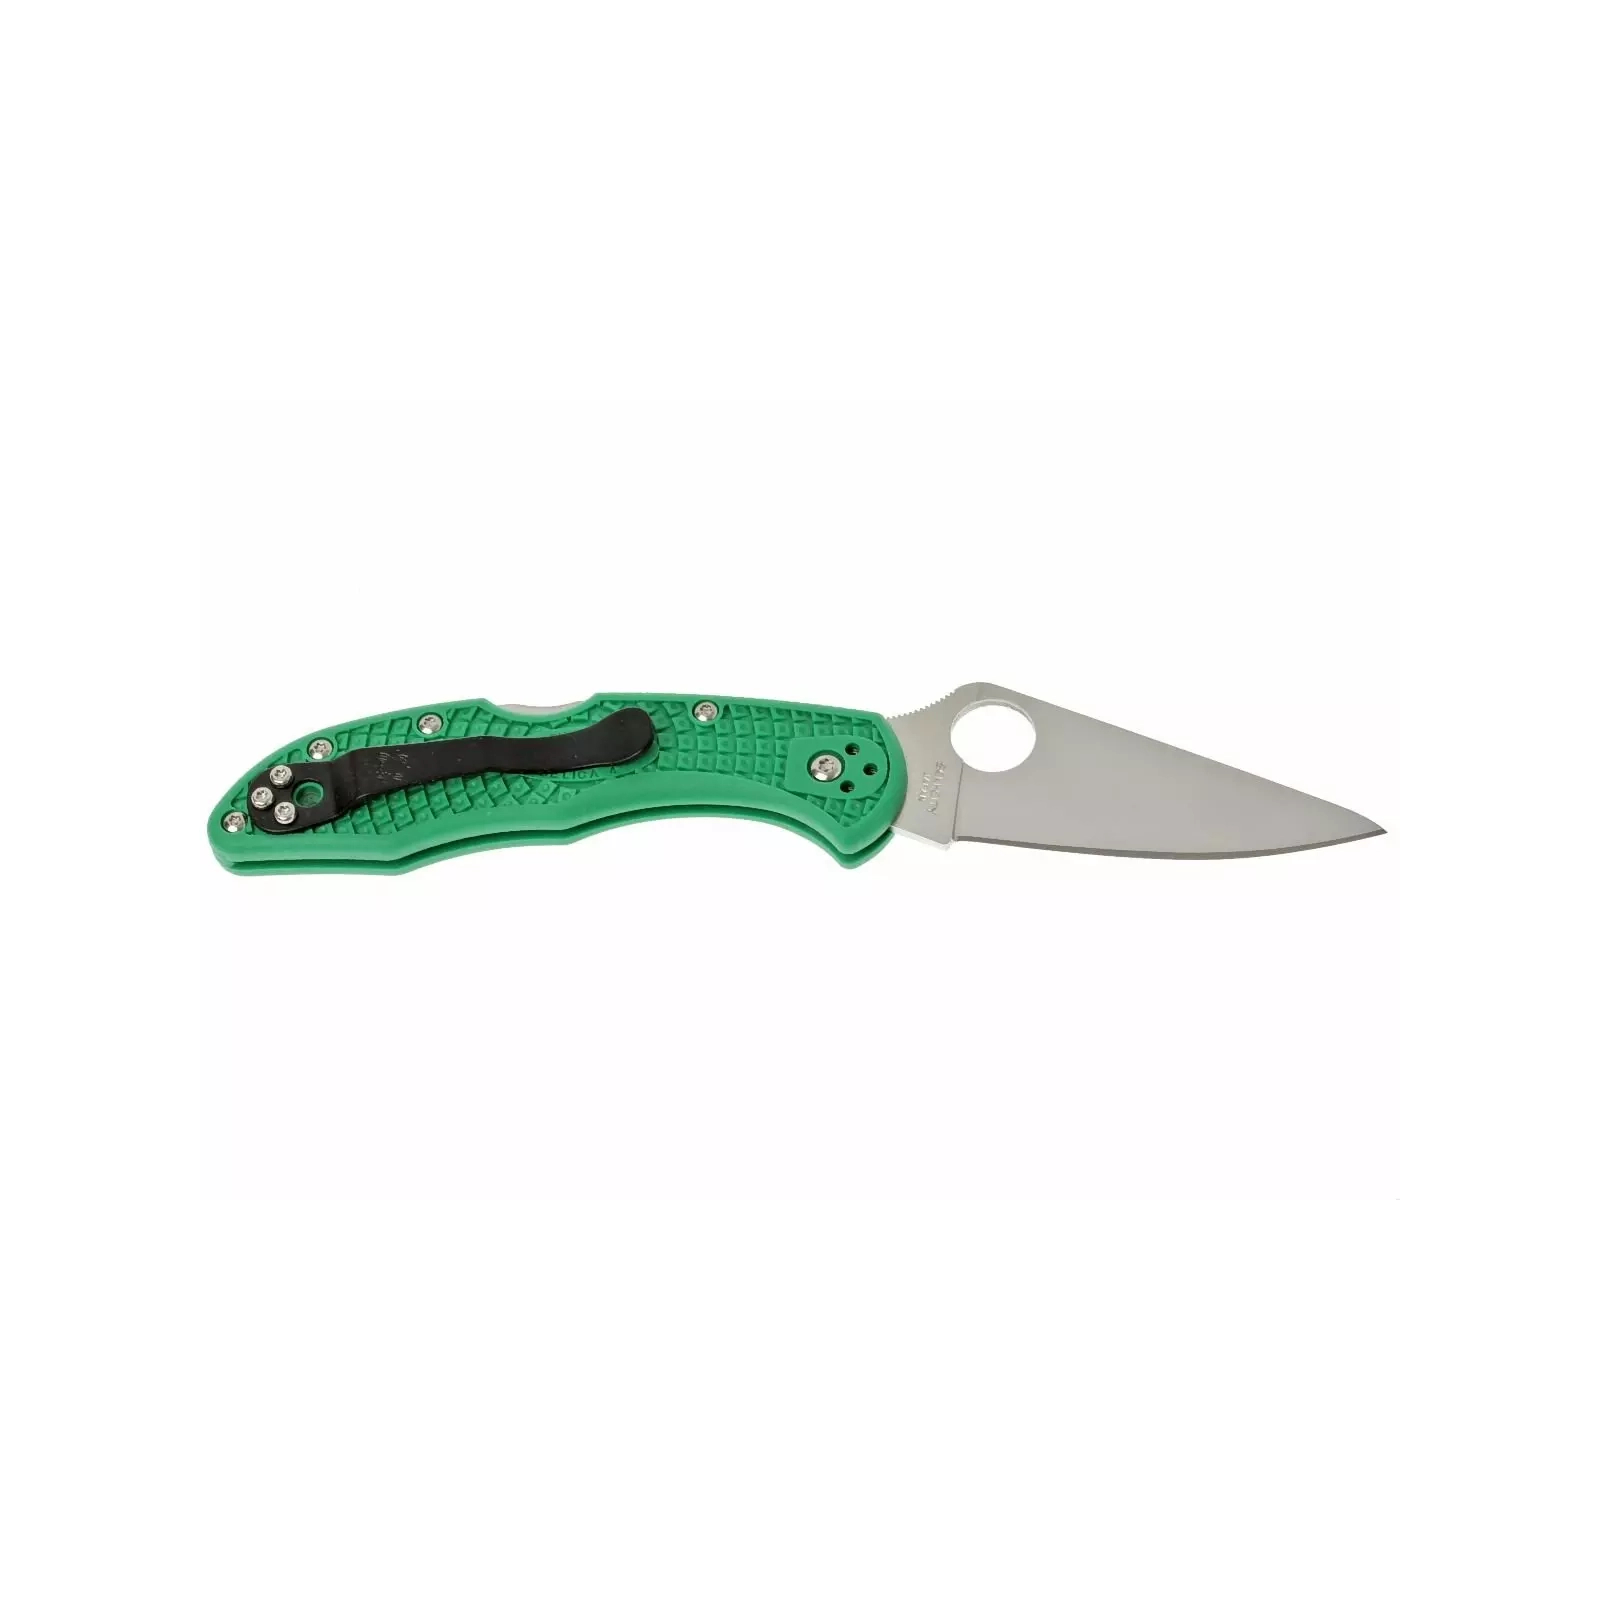 Нож Spyderco Delica 4 Flat Ground ACX 390 Green (C11FPGR) изображение 2